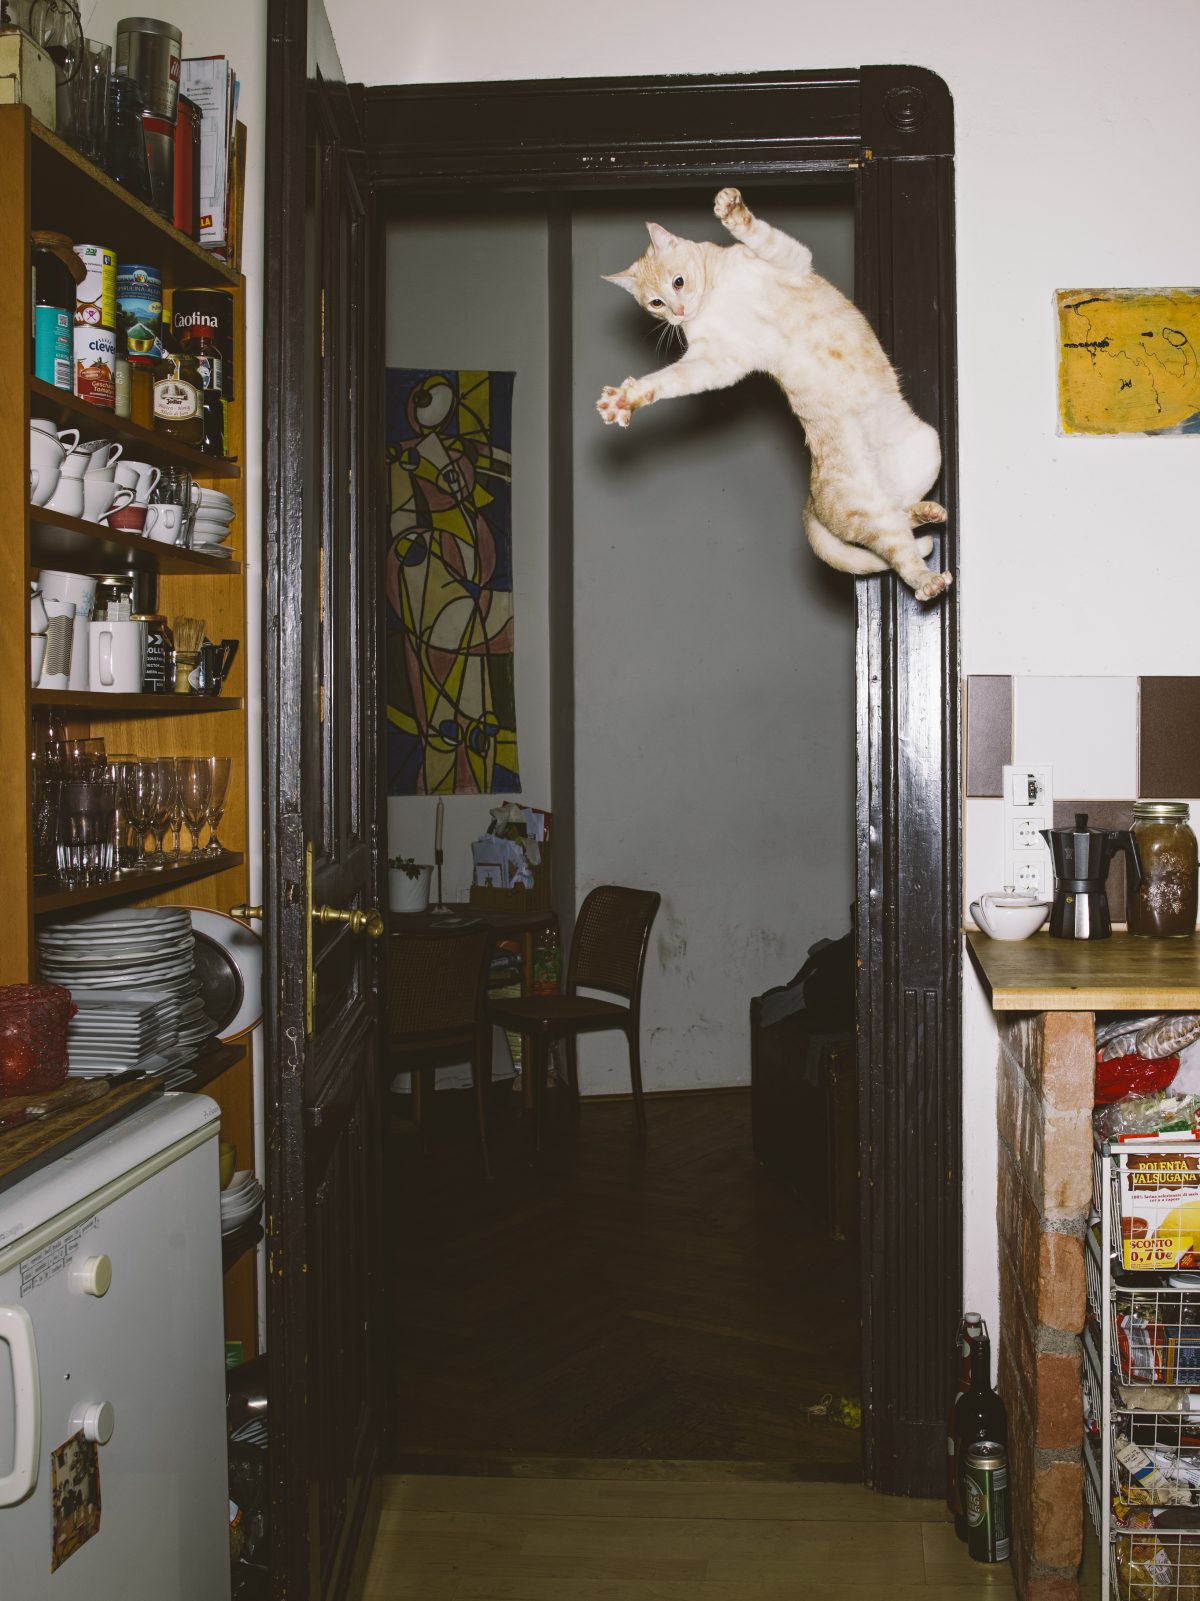 Photo tirée de la série "Jumping cats" / © Daniel Gebhart de Koekkoek